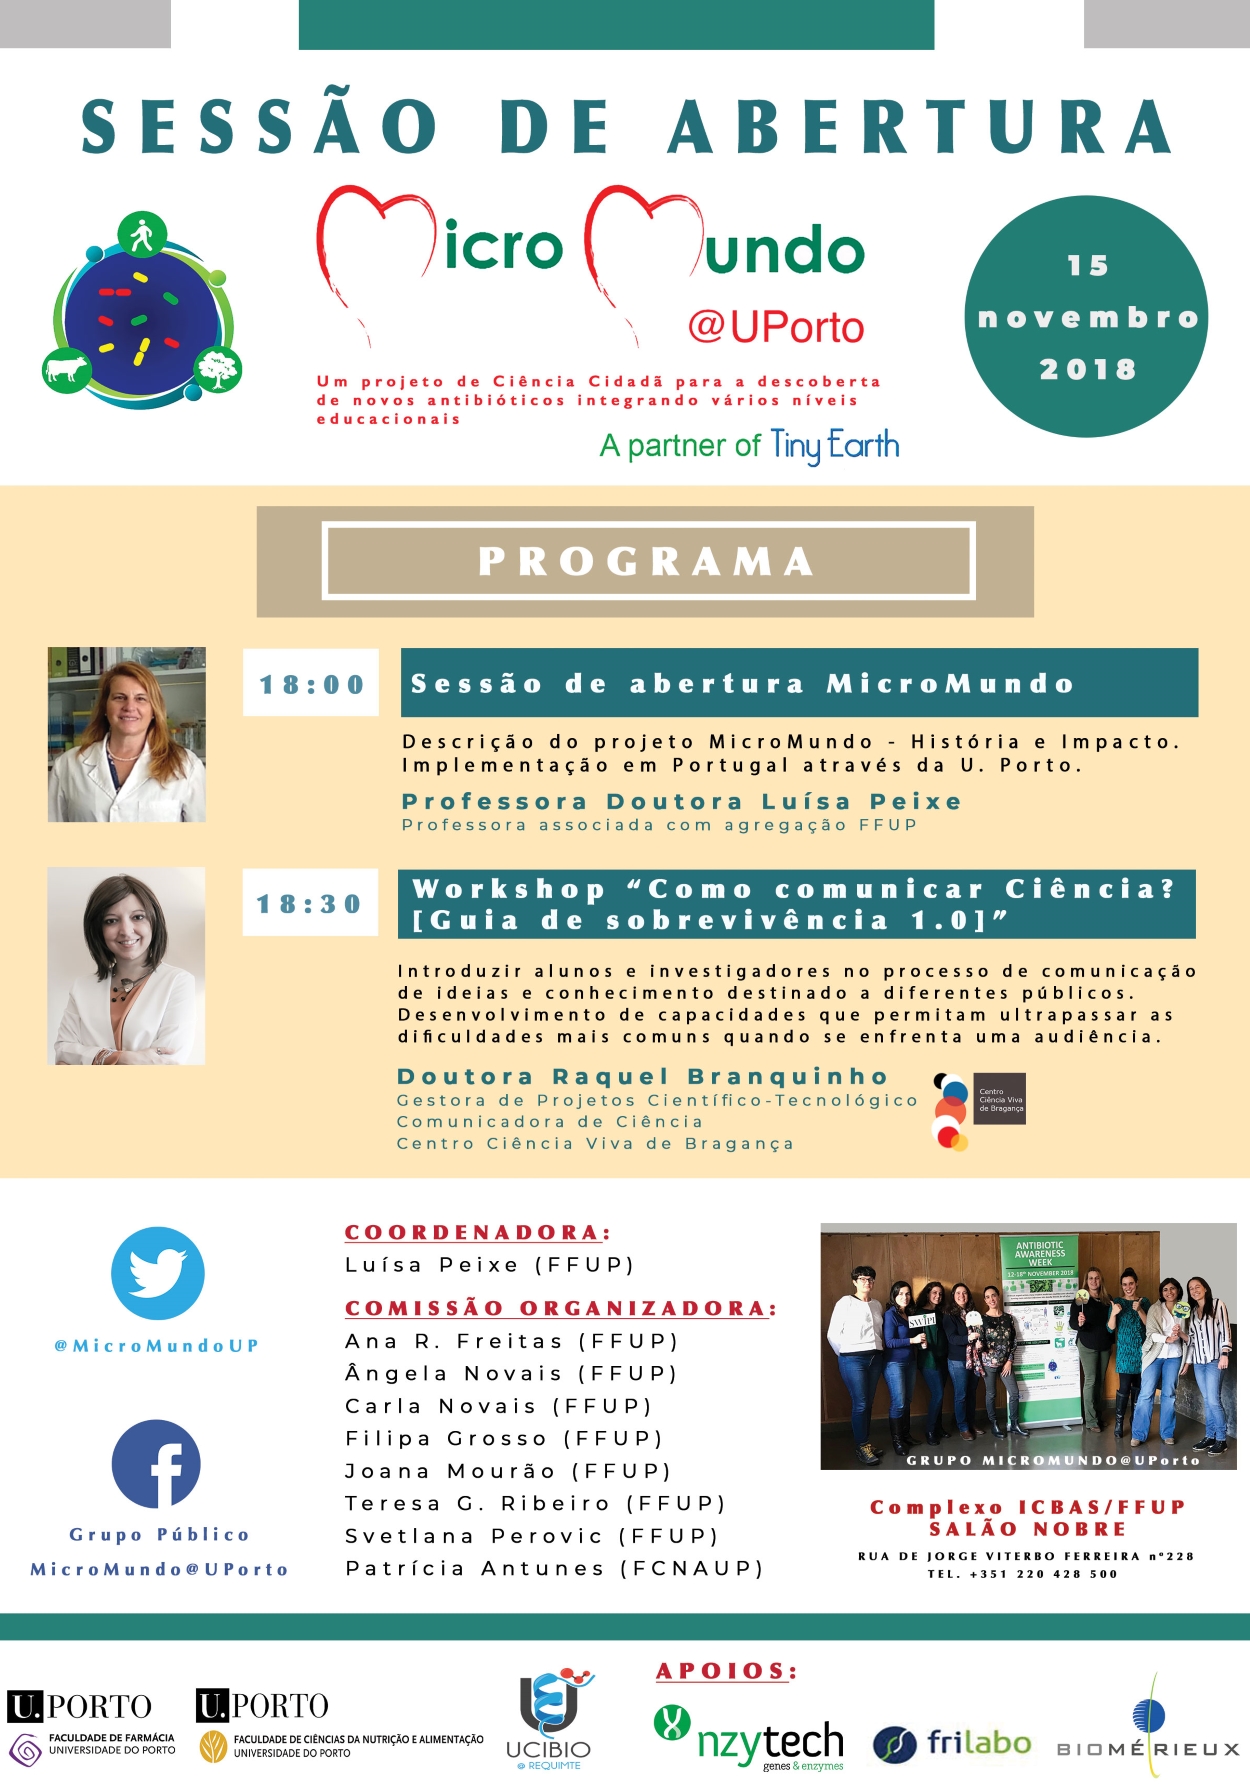 Micromundo@Uporto - Sesso de Abertura dia 15 de novembro de 2018